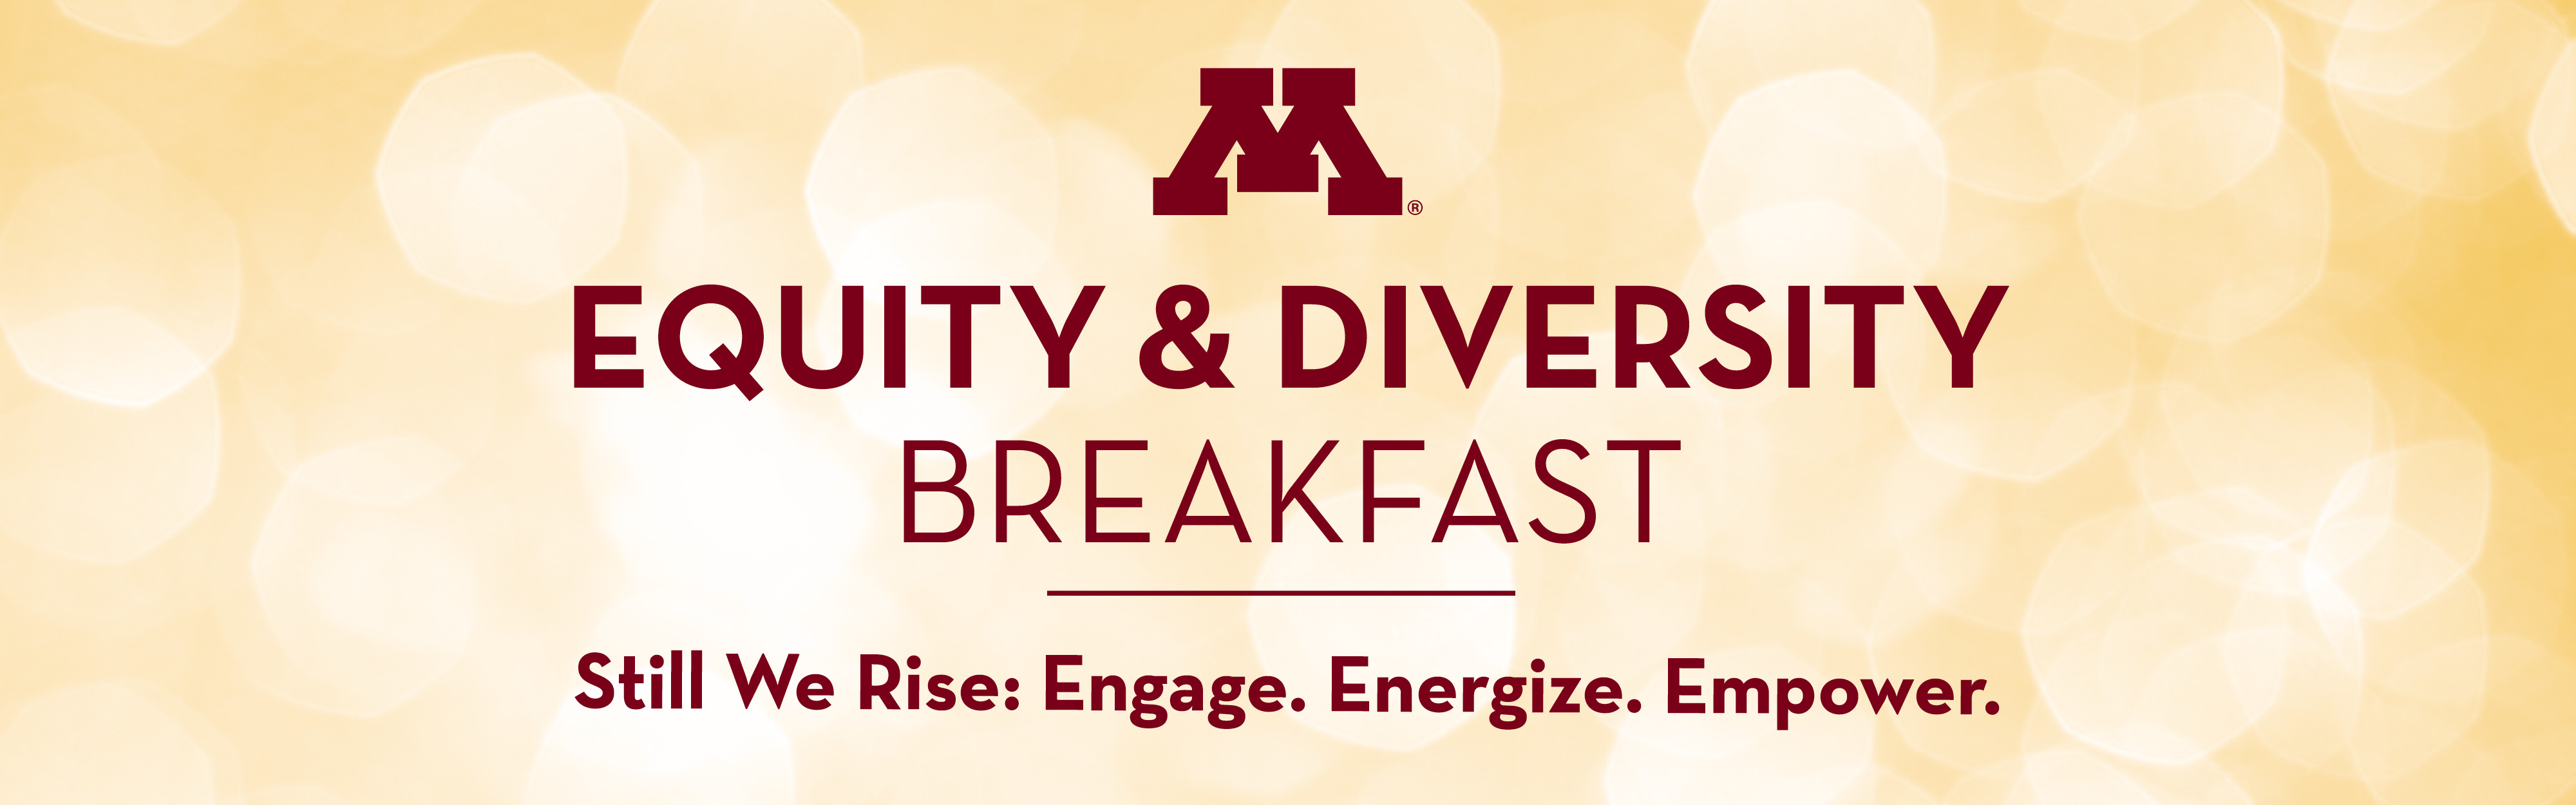 Equity & Diversity Breakfast header